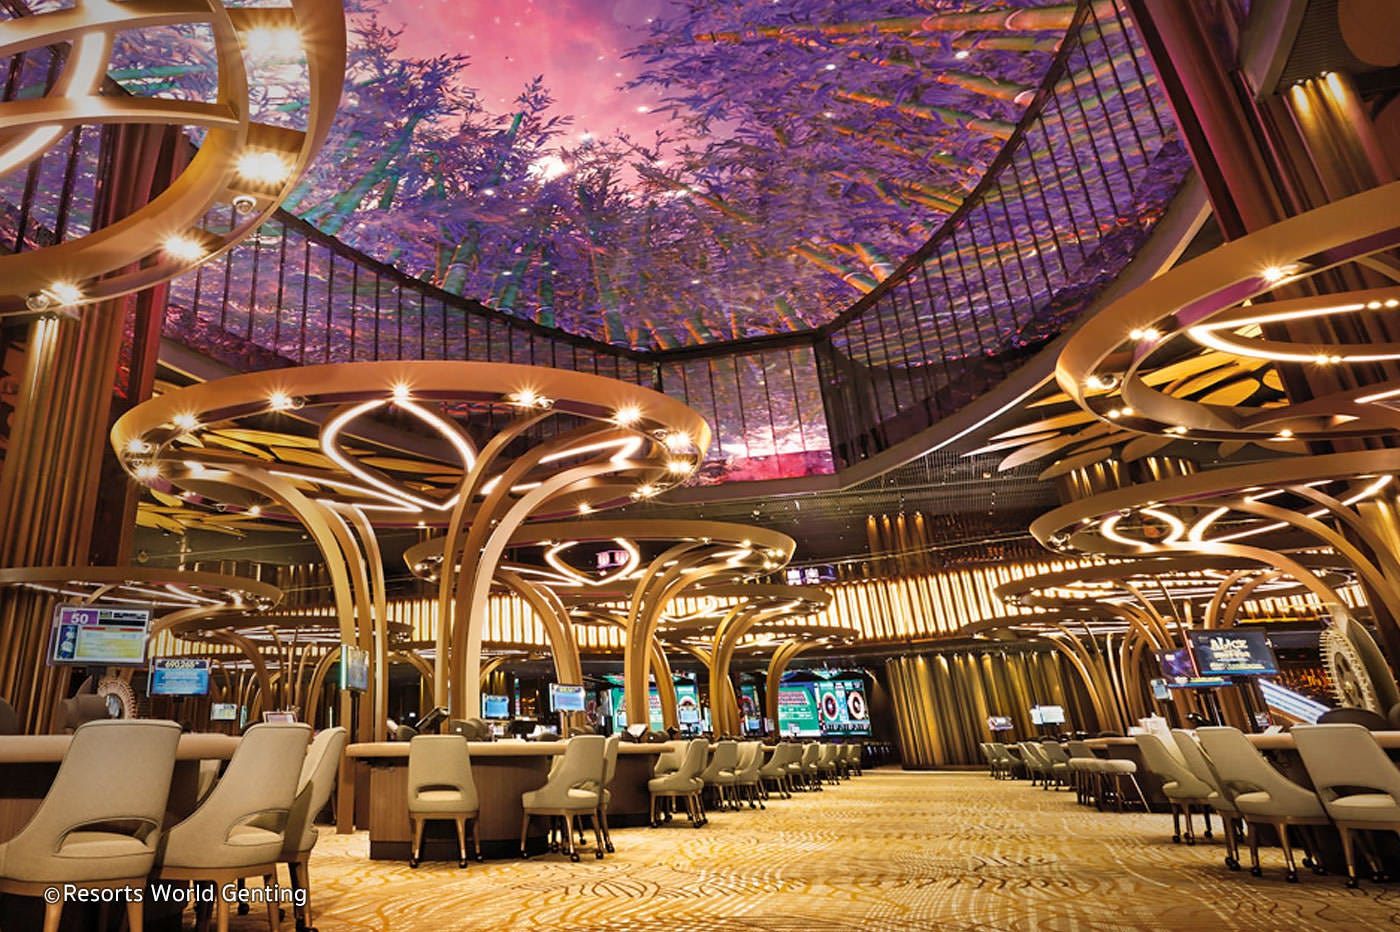 Mengapa Negara Malaysia Diperbolehkan Membuka Casino Meskipun Mayoritas Penduduknya Beragama Islam